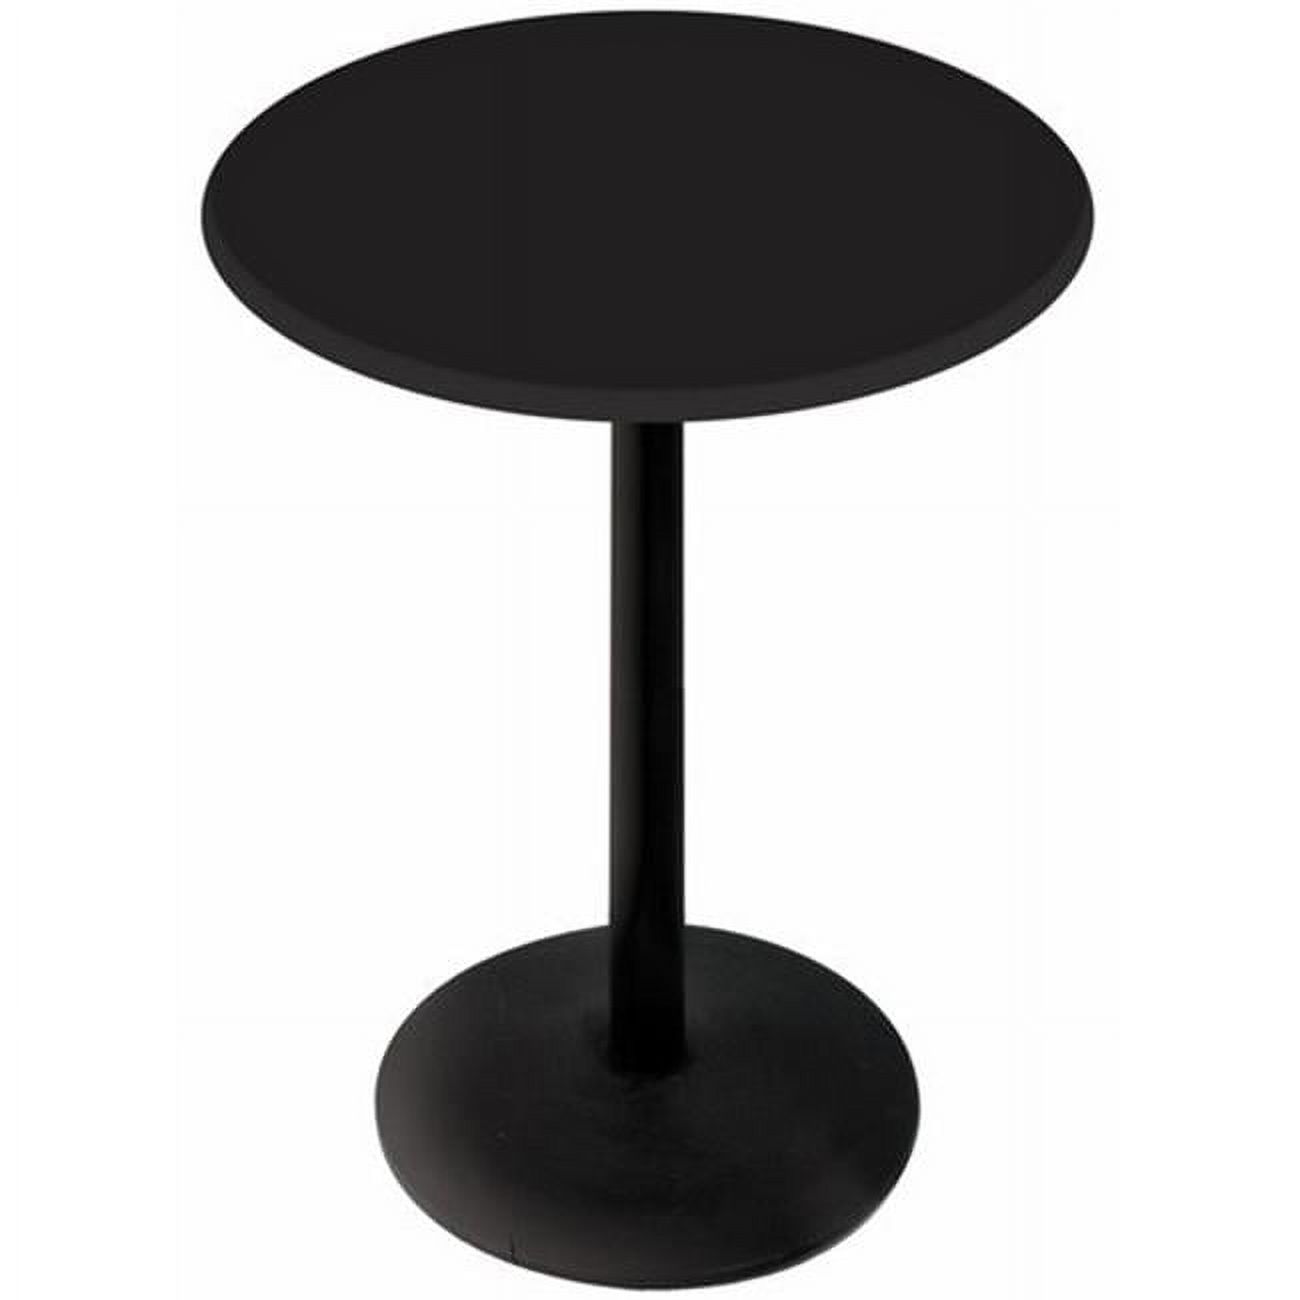 30 in. Black Table with 36 in. Diameter Indoor & Outdoor Black Steel Round Top - image 1 of 1